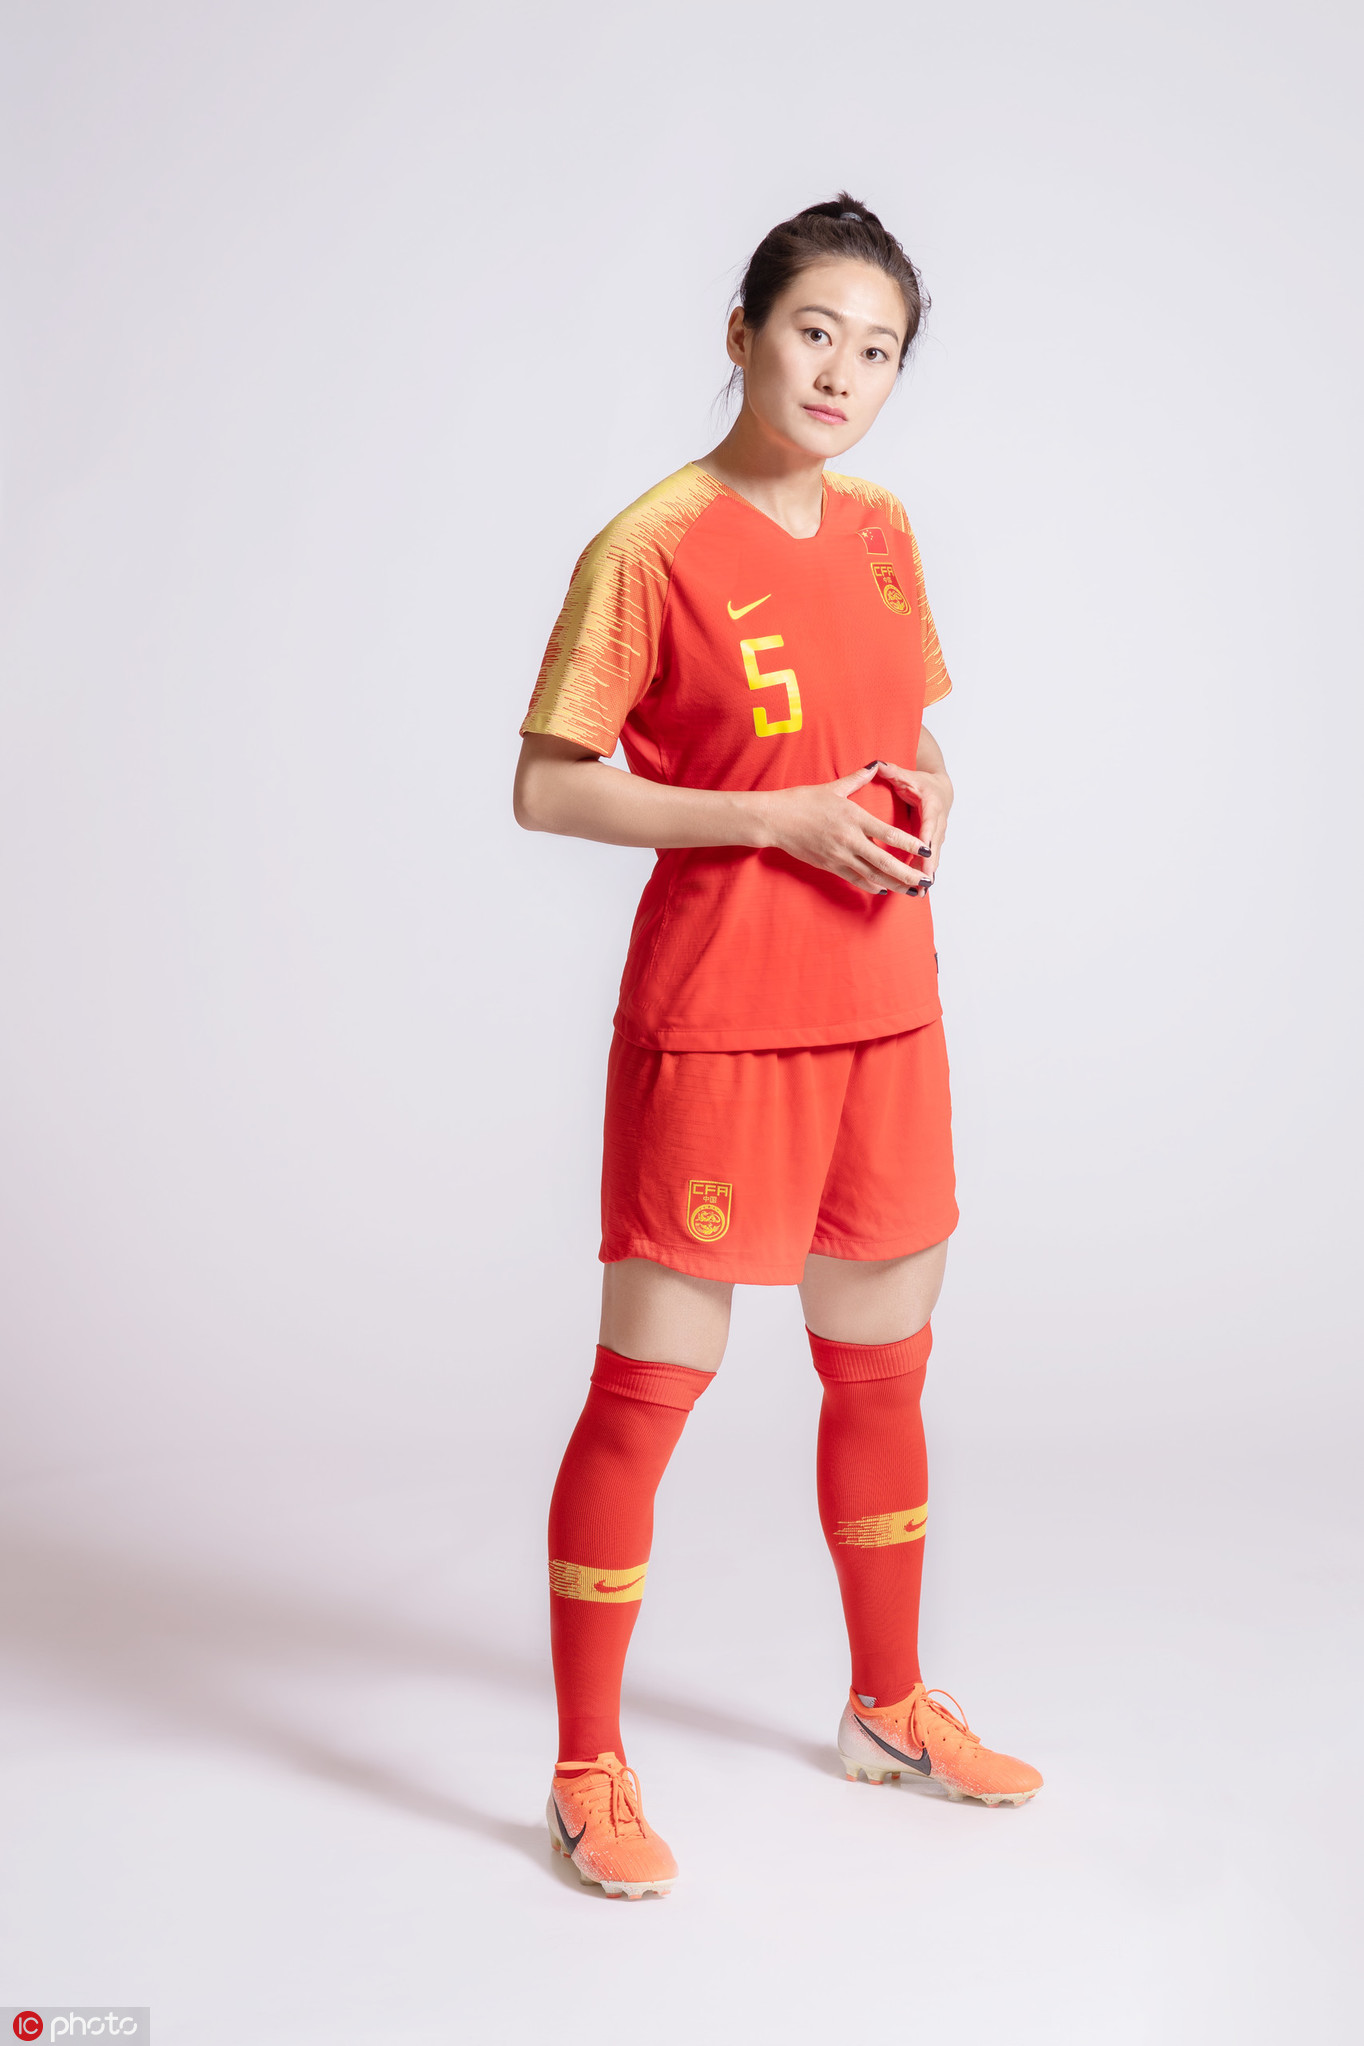 中国女足世界杯创意写真曝光铿锵玫瑰敢耀法兰西